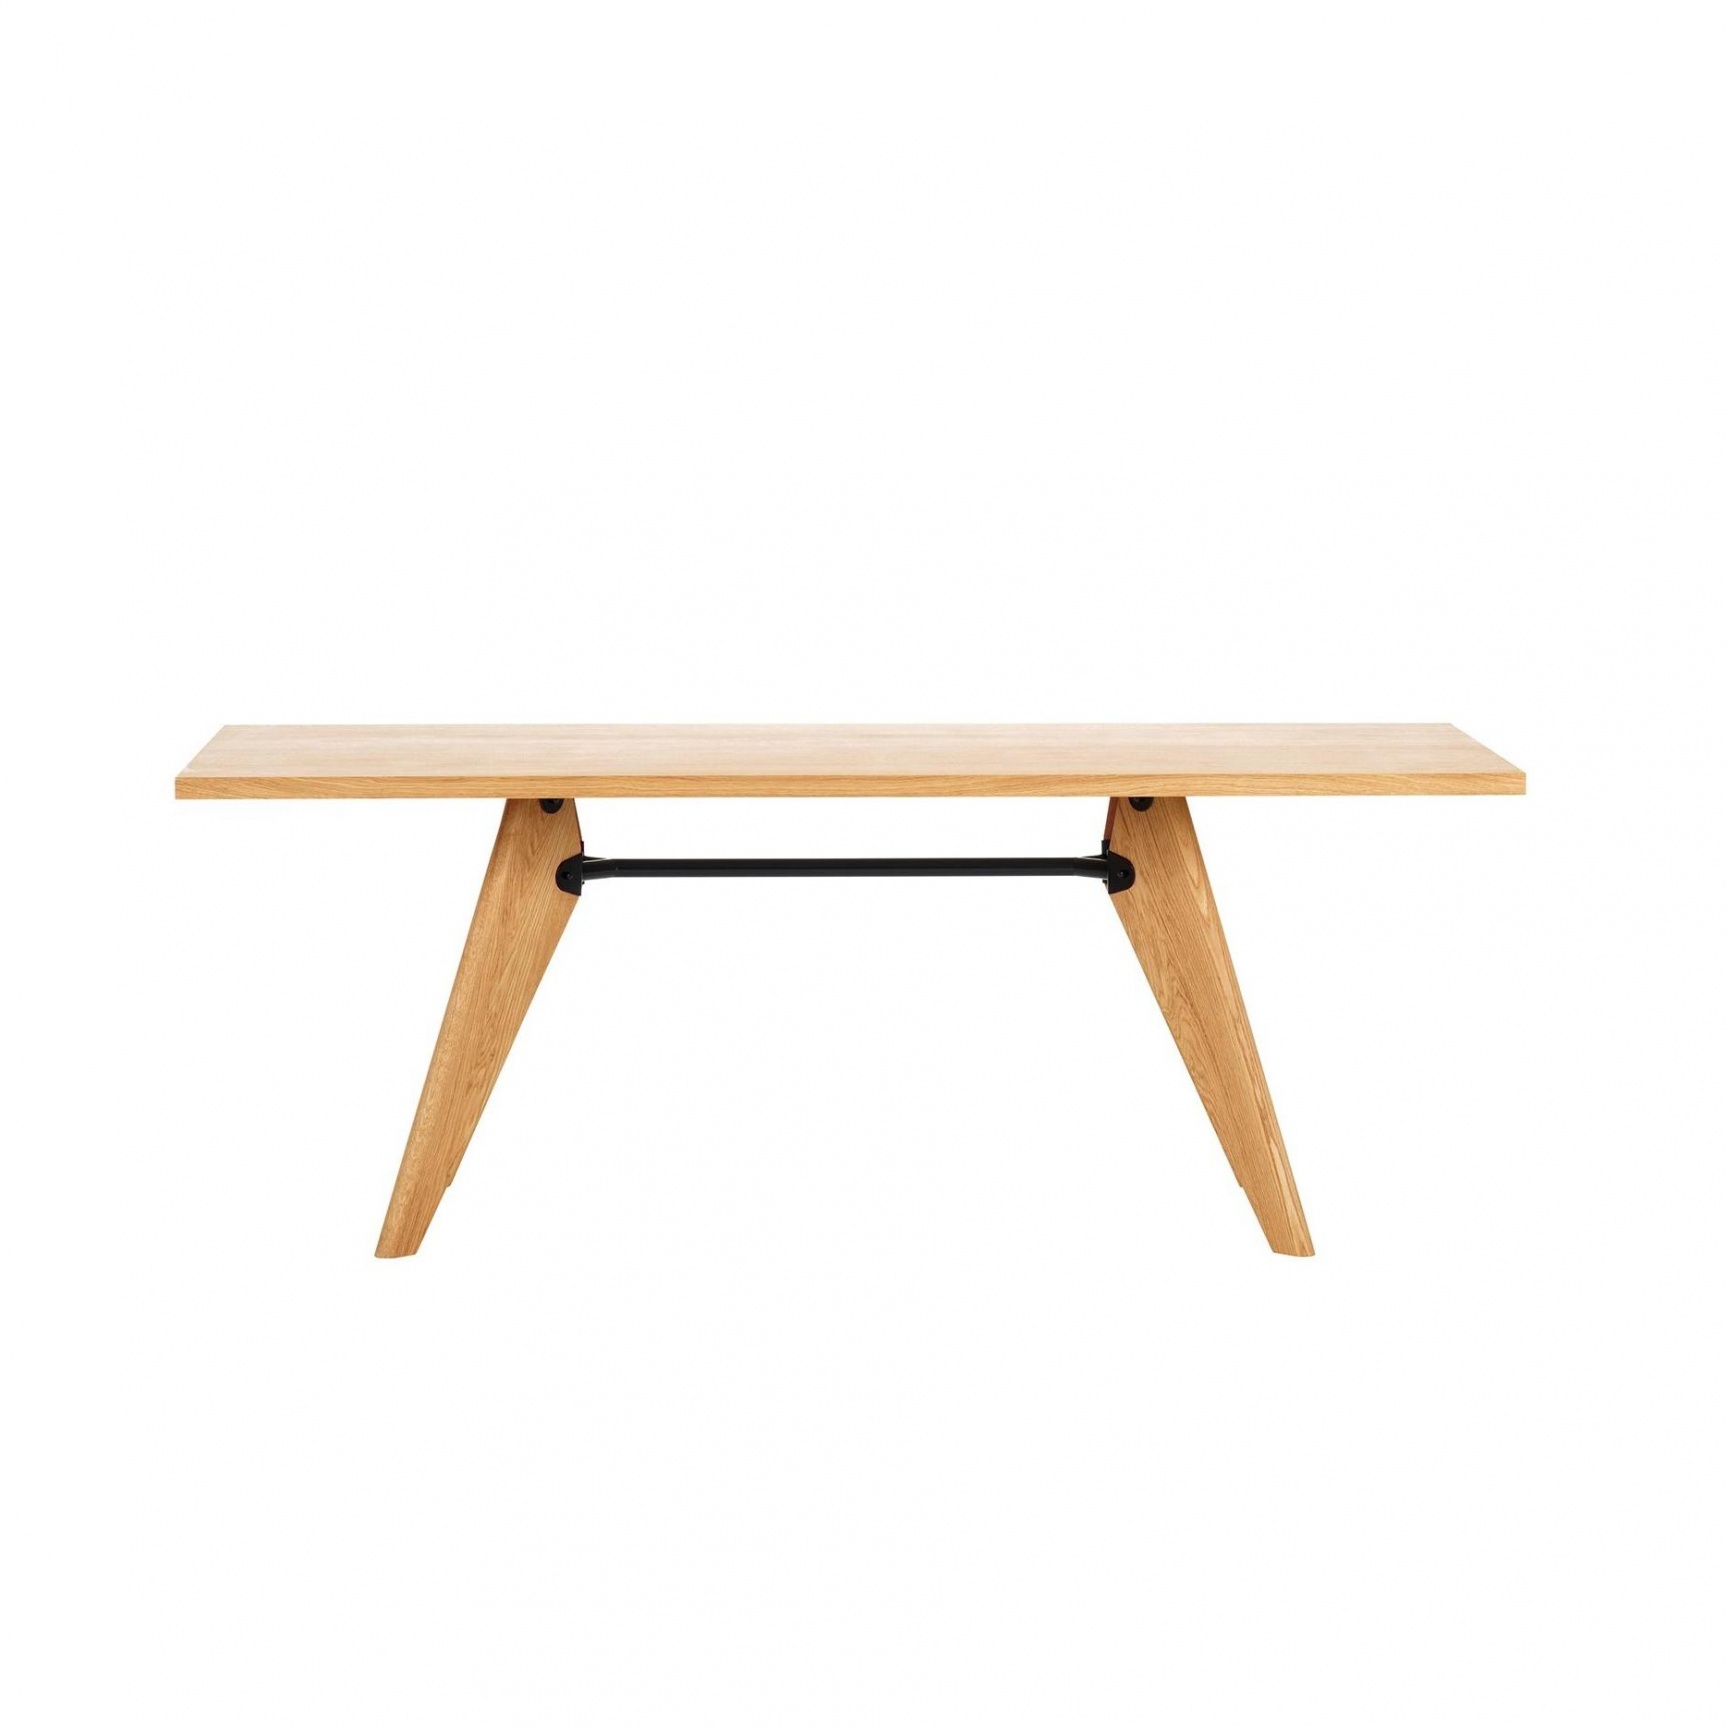 Vitra - Table Solvay Tisch 180x90cm - eiche/geölt/LxBxH 180x90x74cm/Traverse tiefschwarz von Vitra